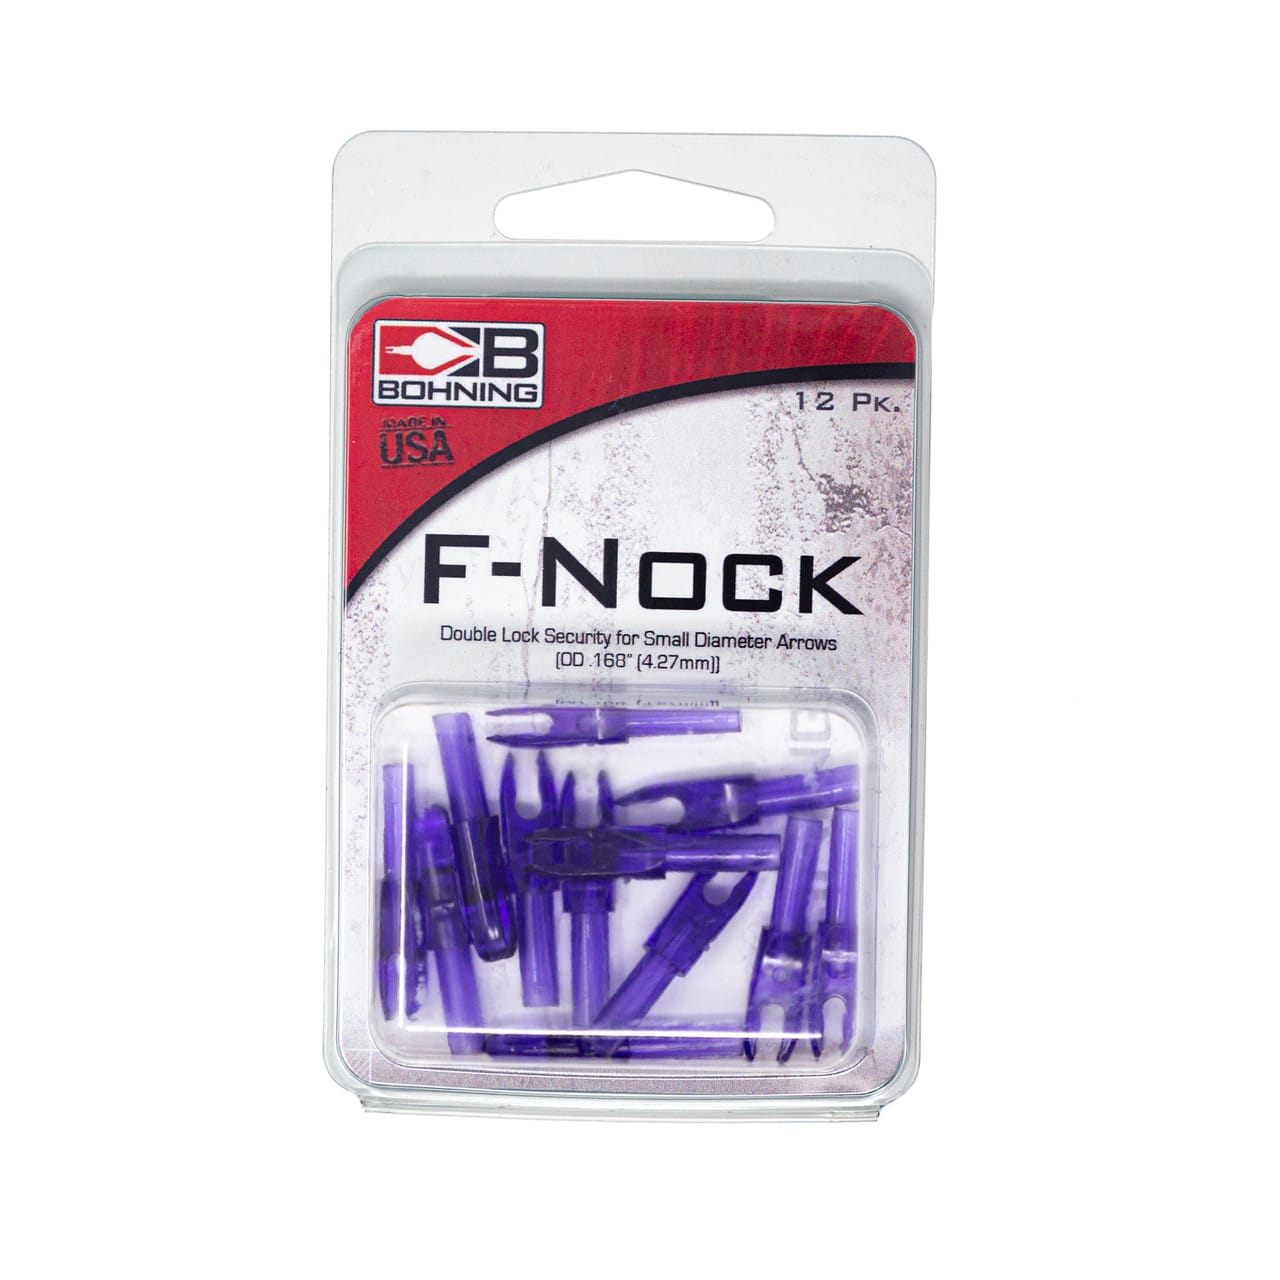 Bohning F Nock Pack of 12